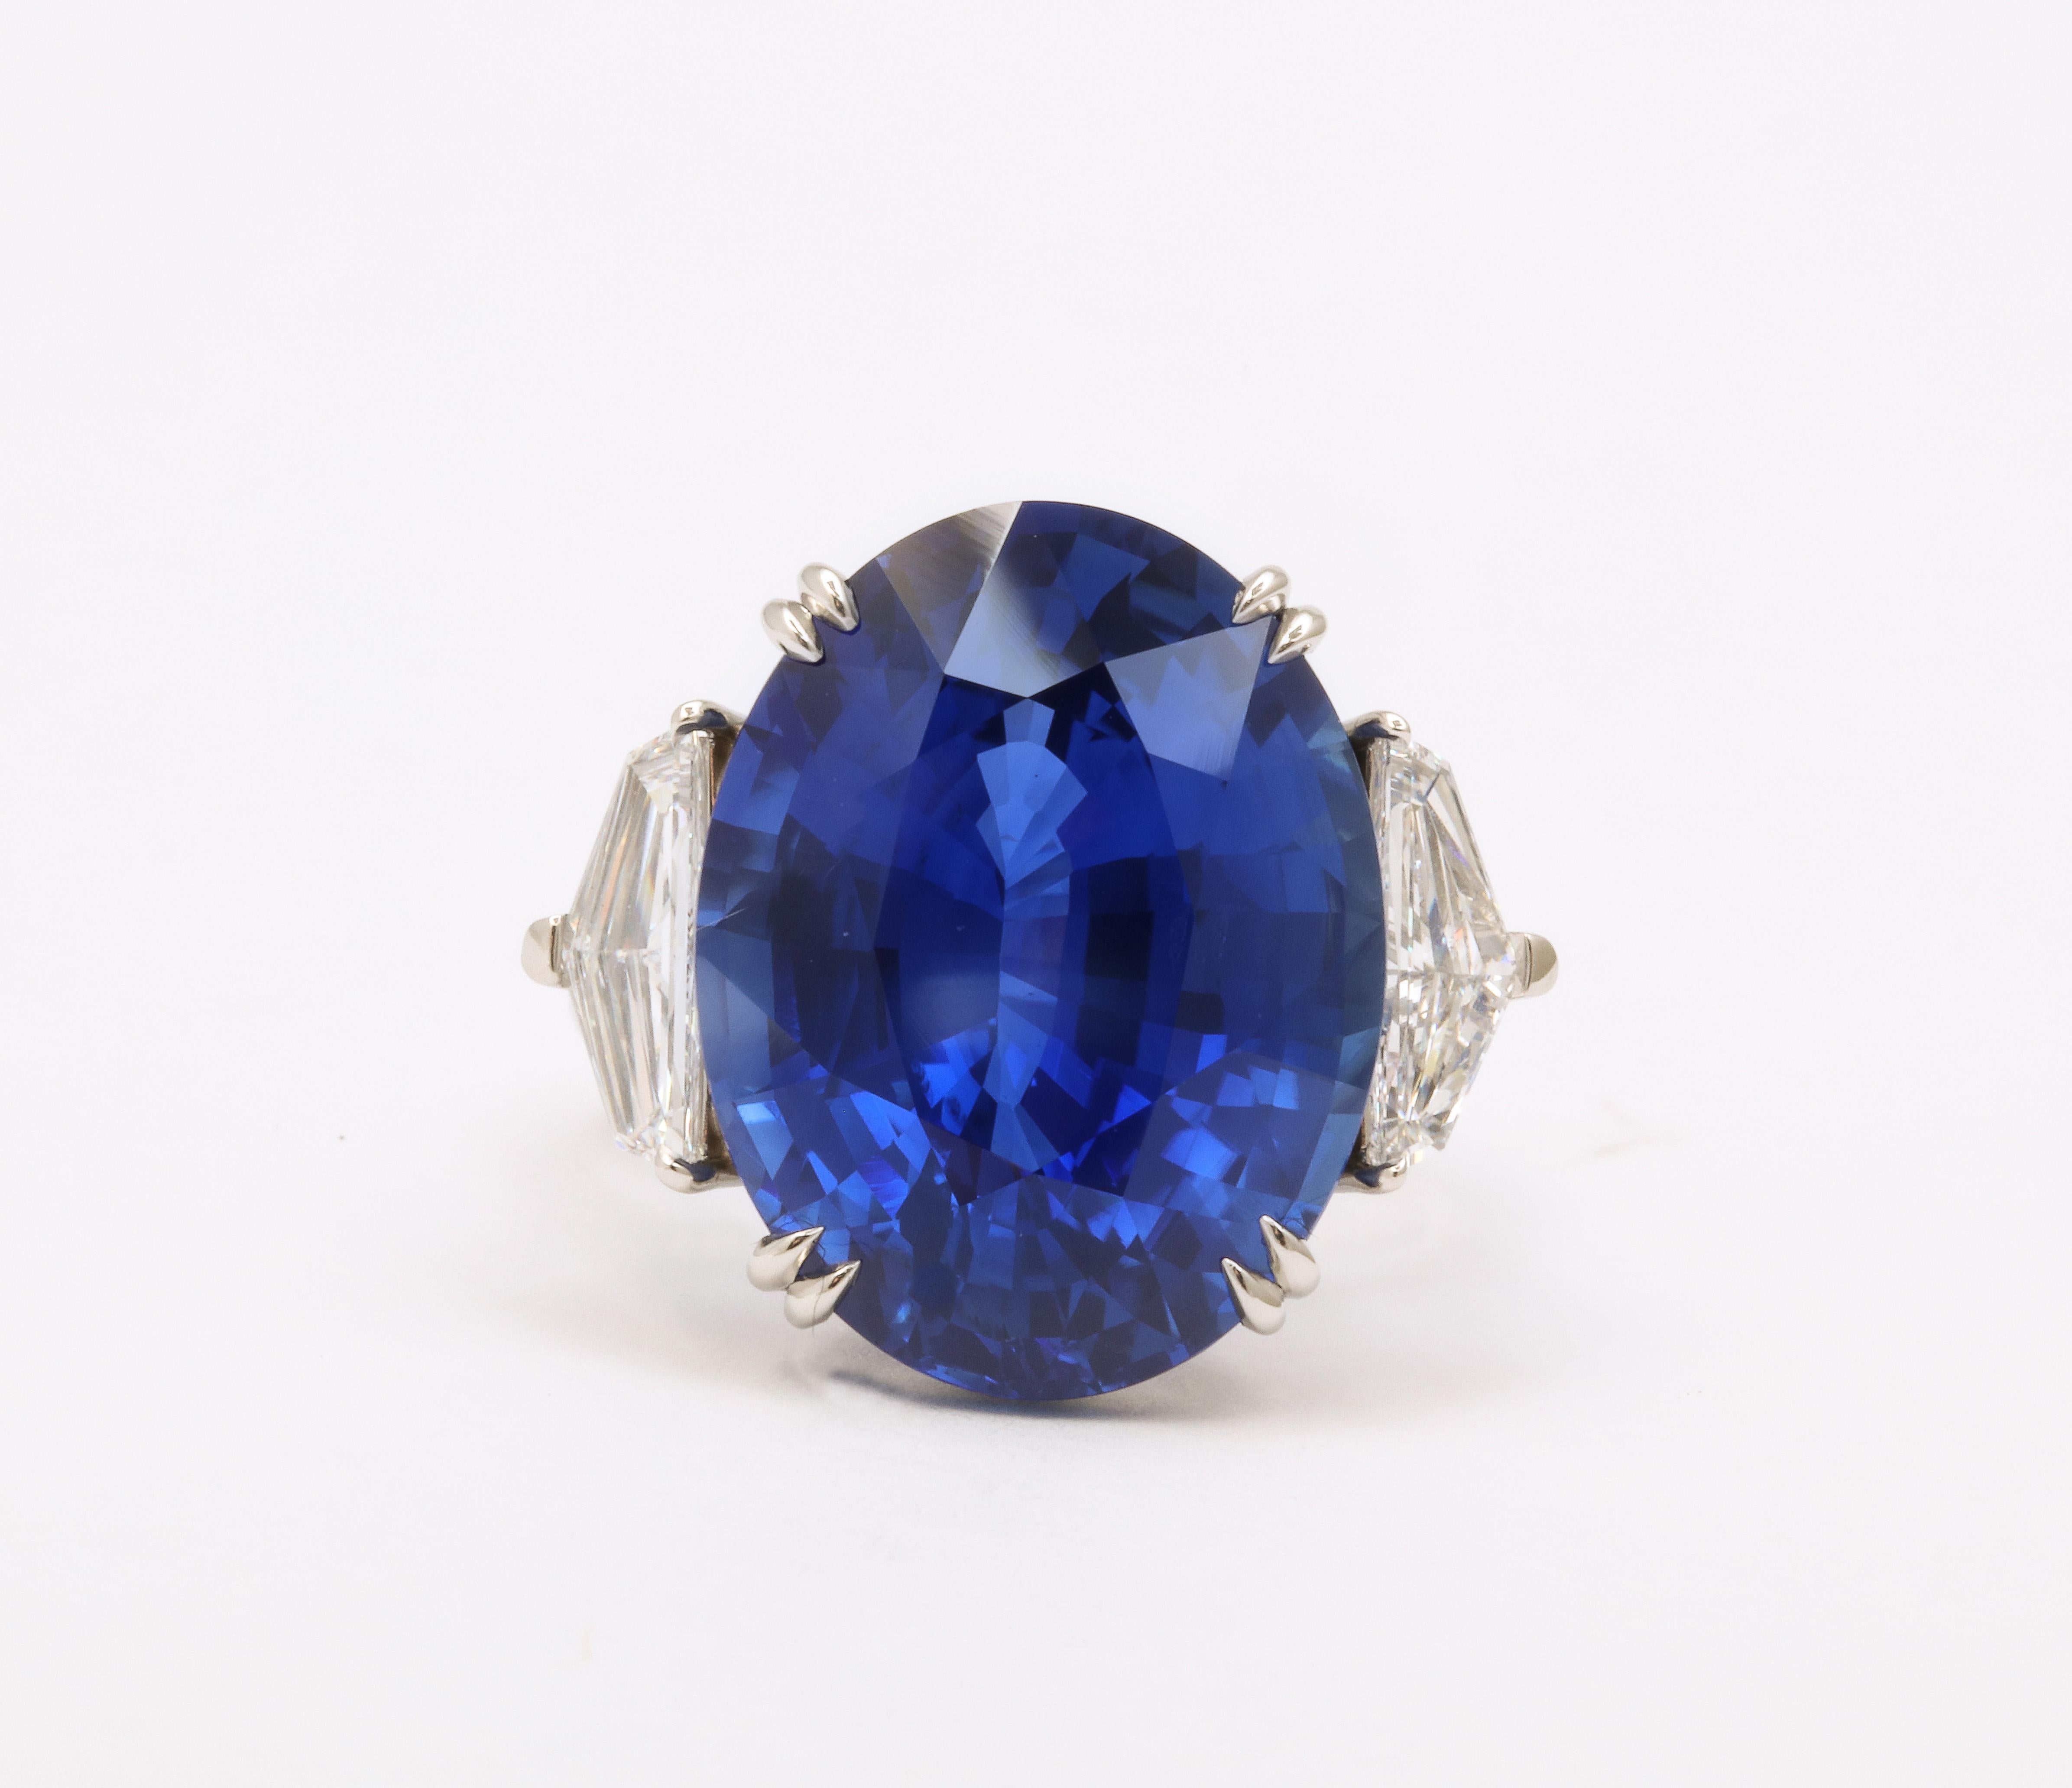 20 carat blue sapphire price